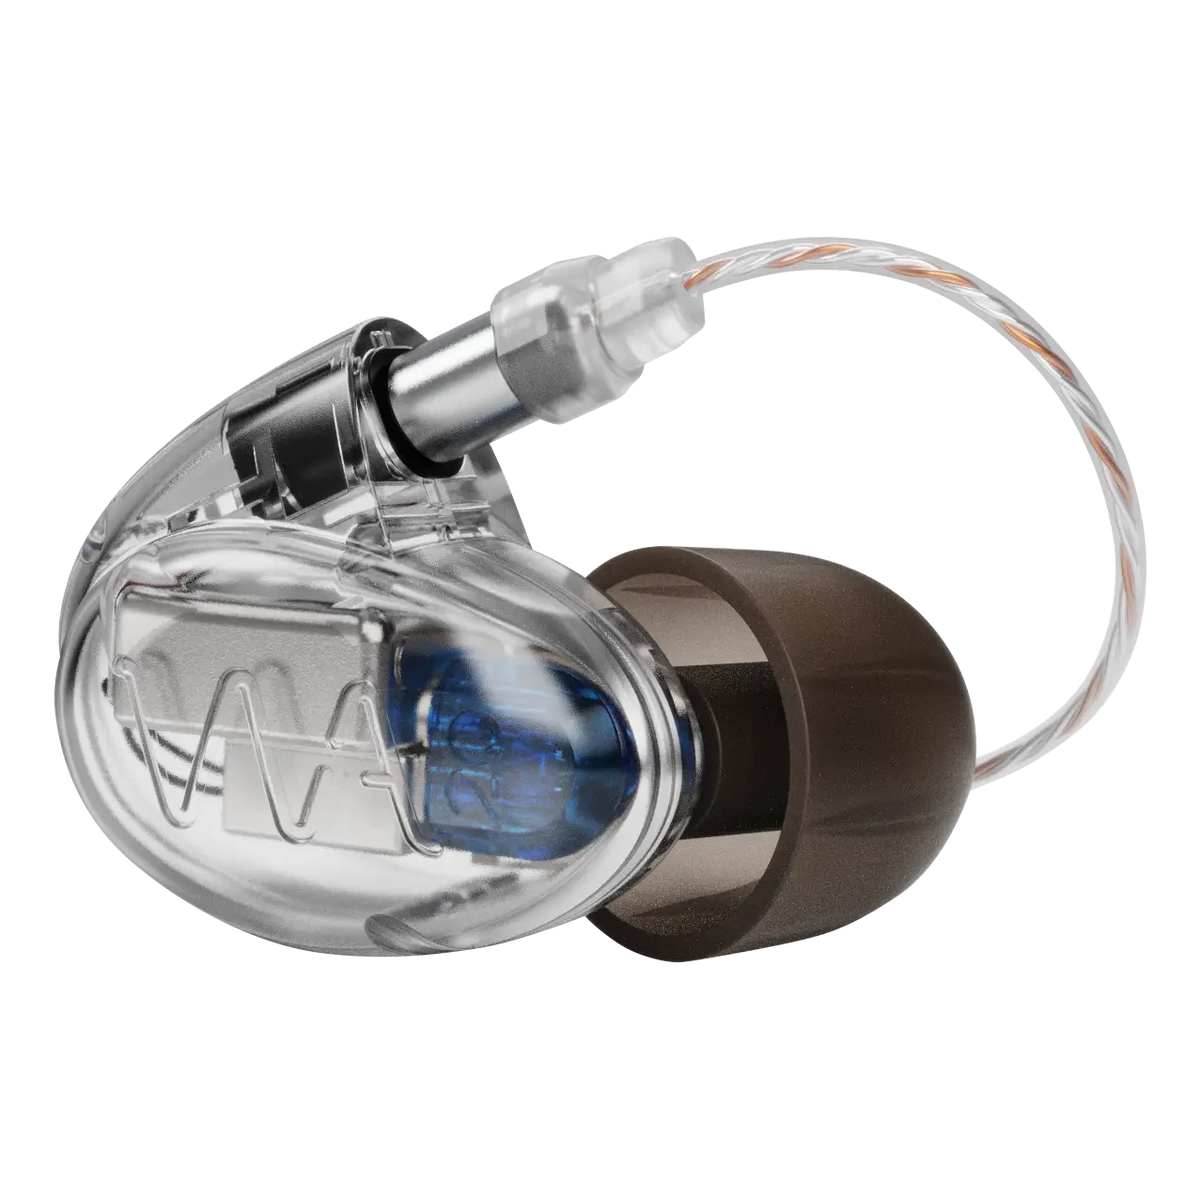 Westone Audio Pro X20 Professional Dual Drivers IEM Earphones with Linum BaX T2 Detachable Cable